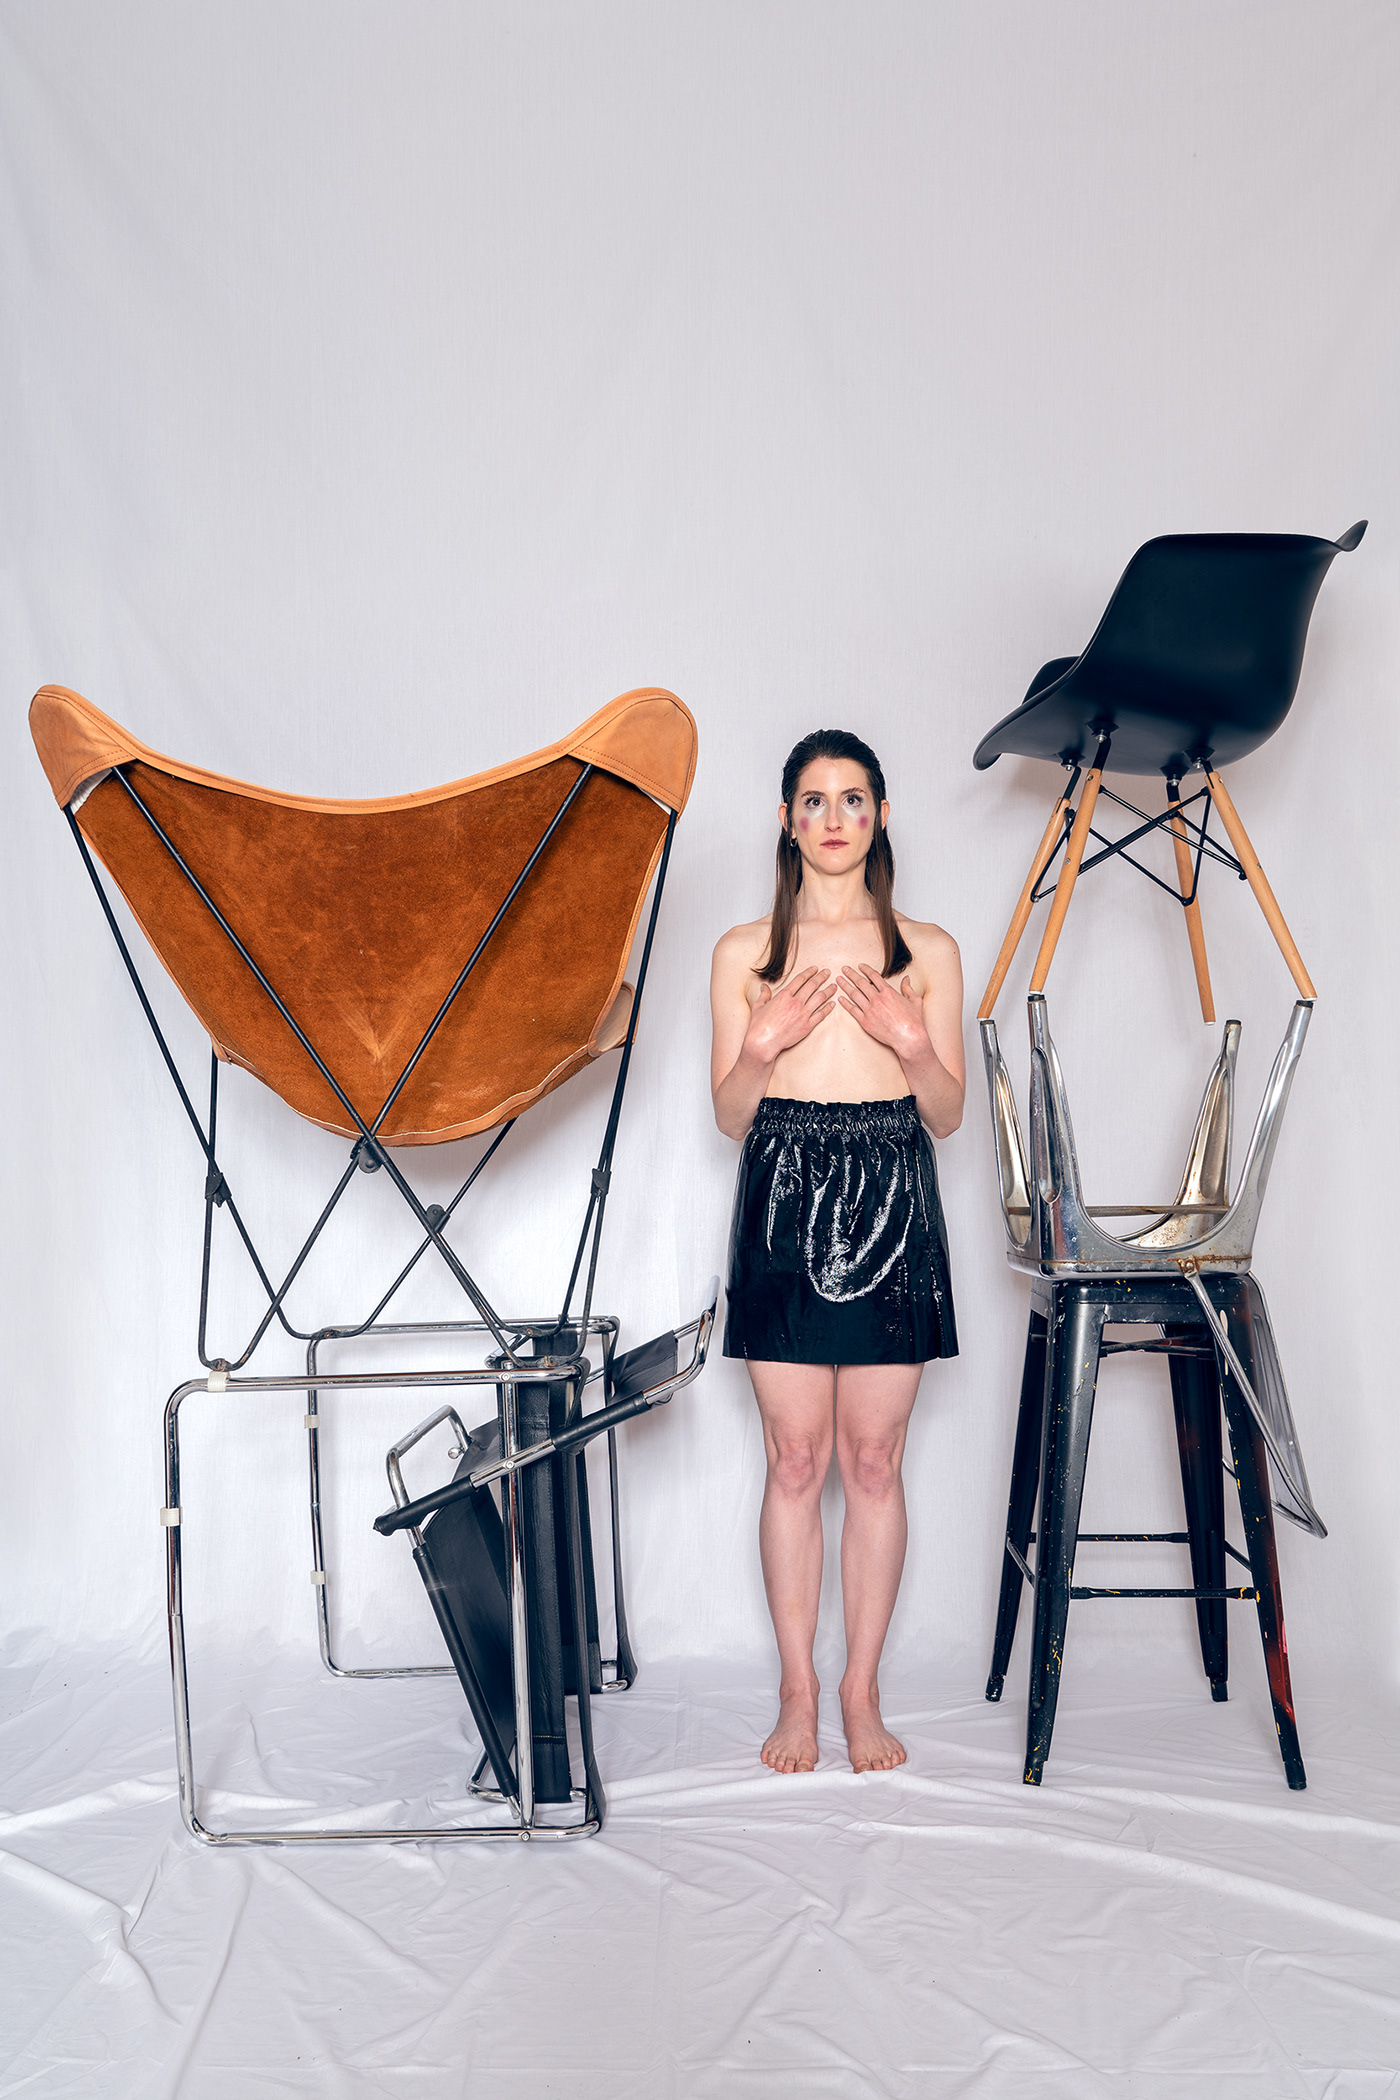 arte bkf chair composición EAMES Fotografia kandinski Photography  stool wassilly